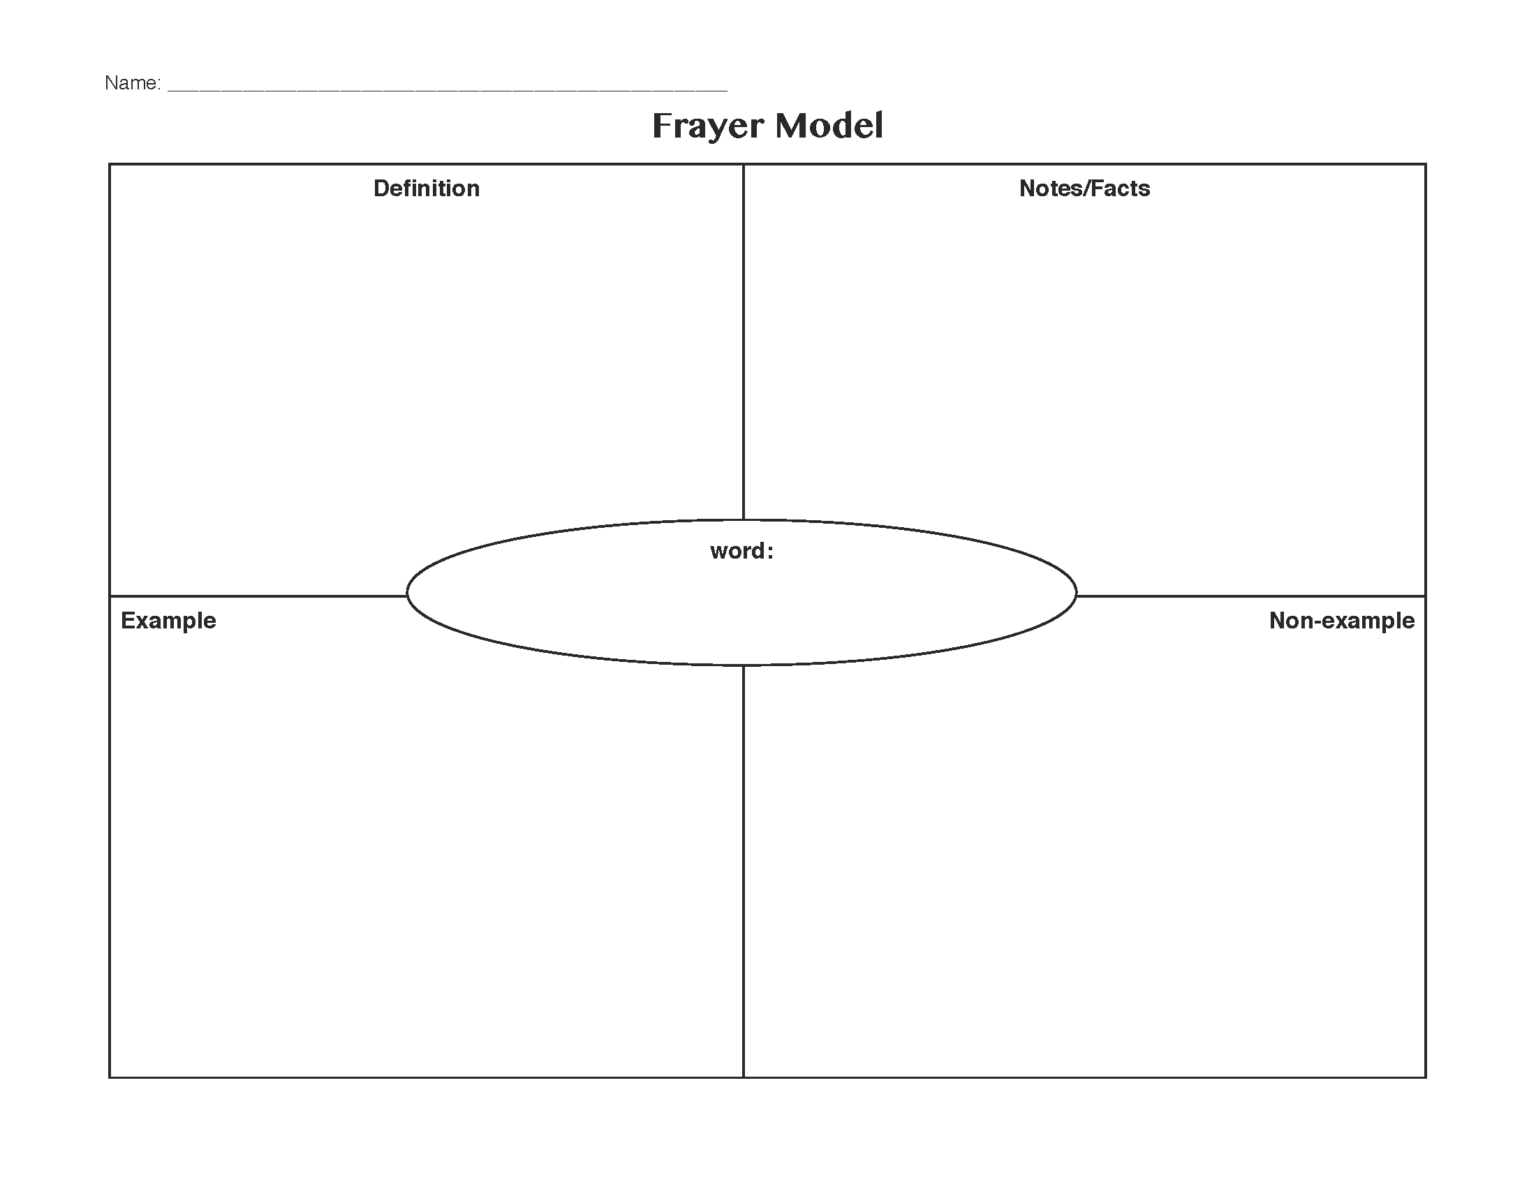 frayer model template